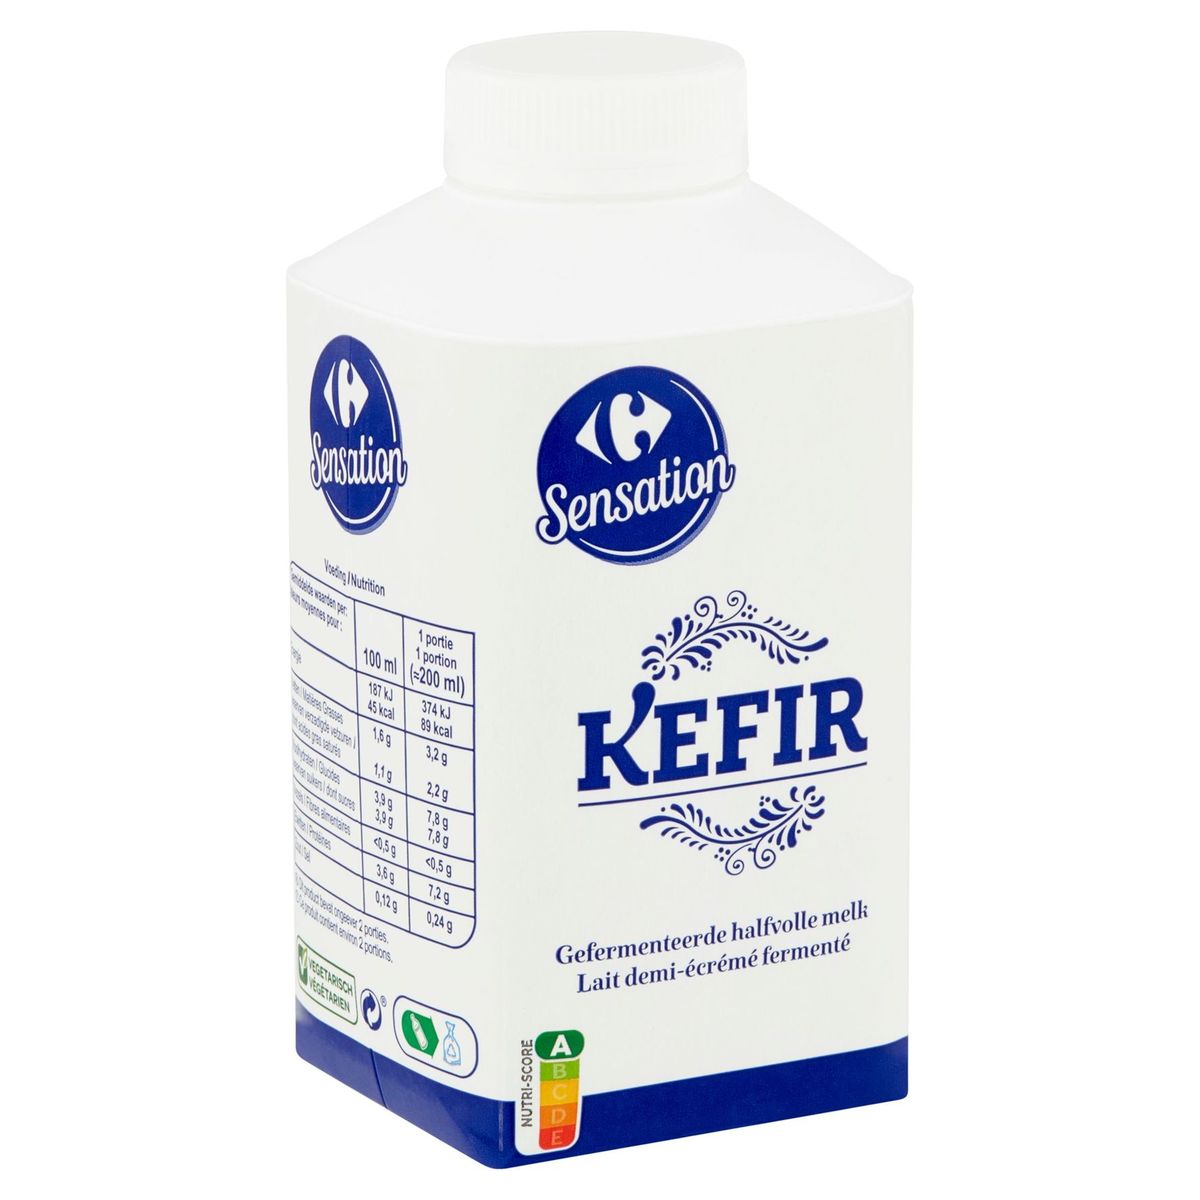 Carrefour Sensation Kefir Lait Demi-Écrémé Fermenté 500 ml